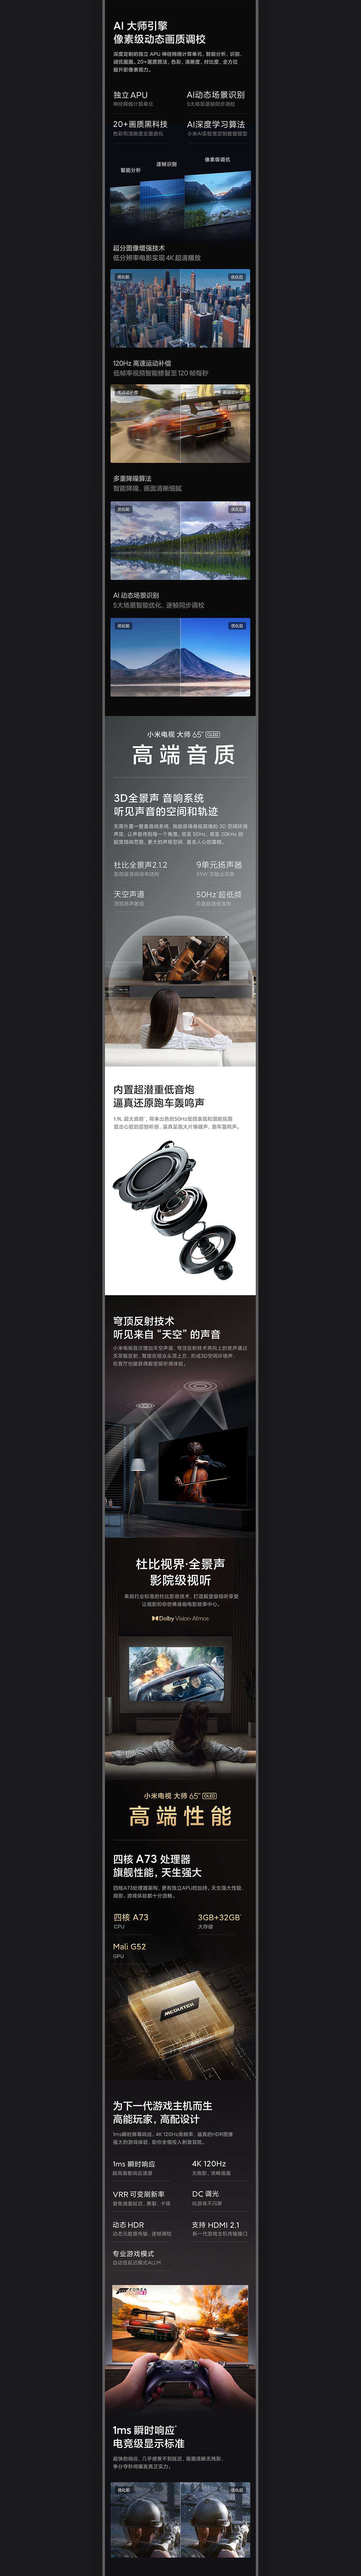 小米电视 大师 65″OLED产品站设计